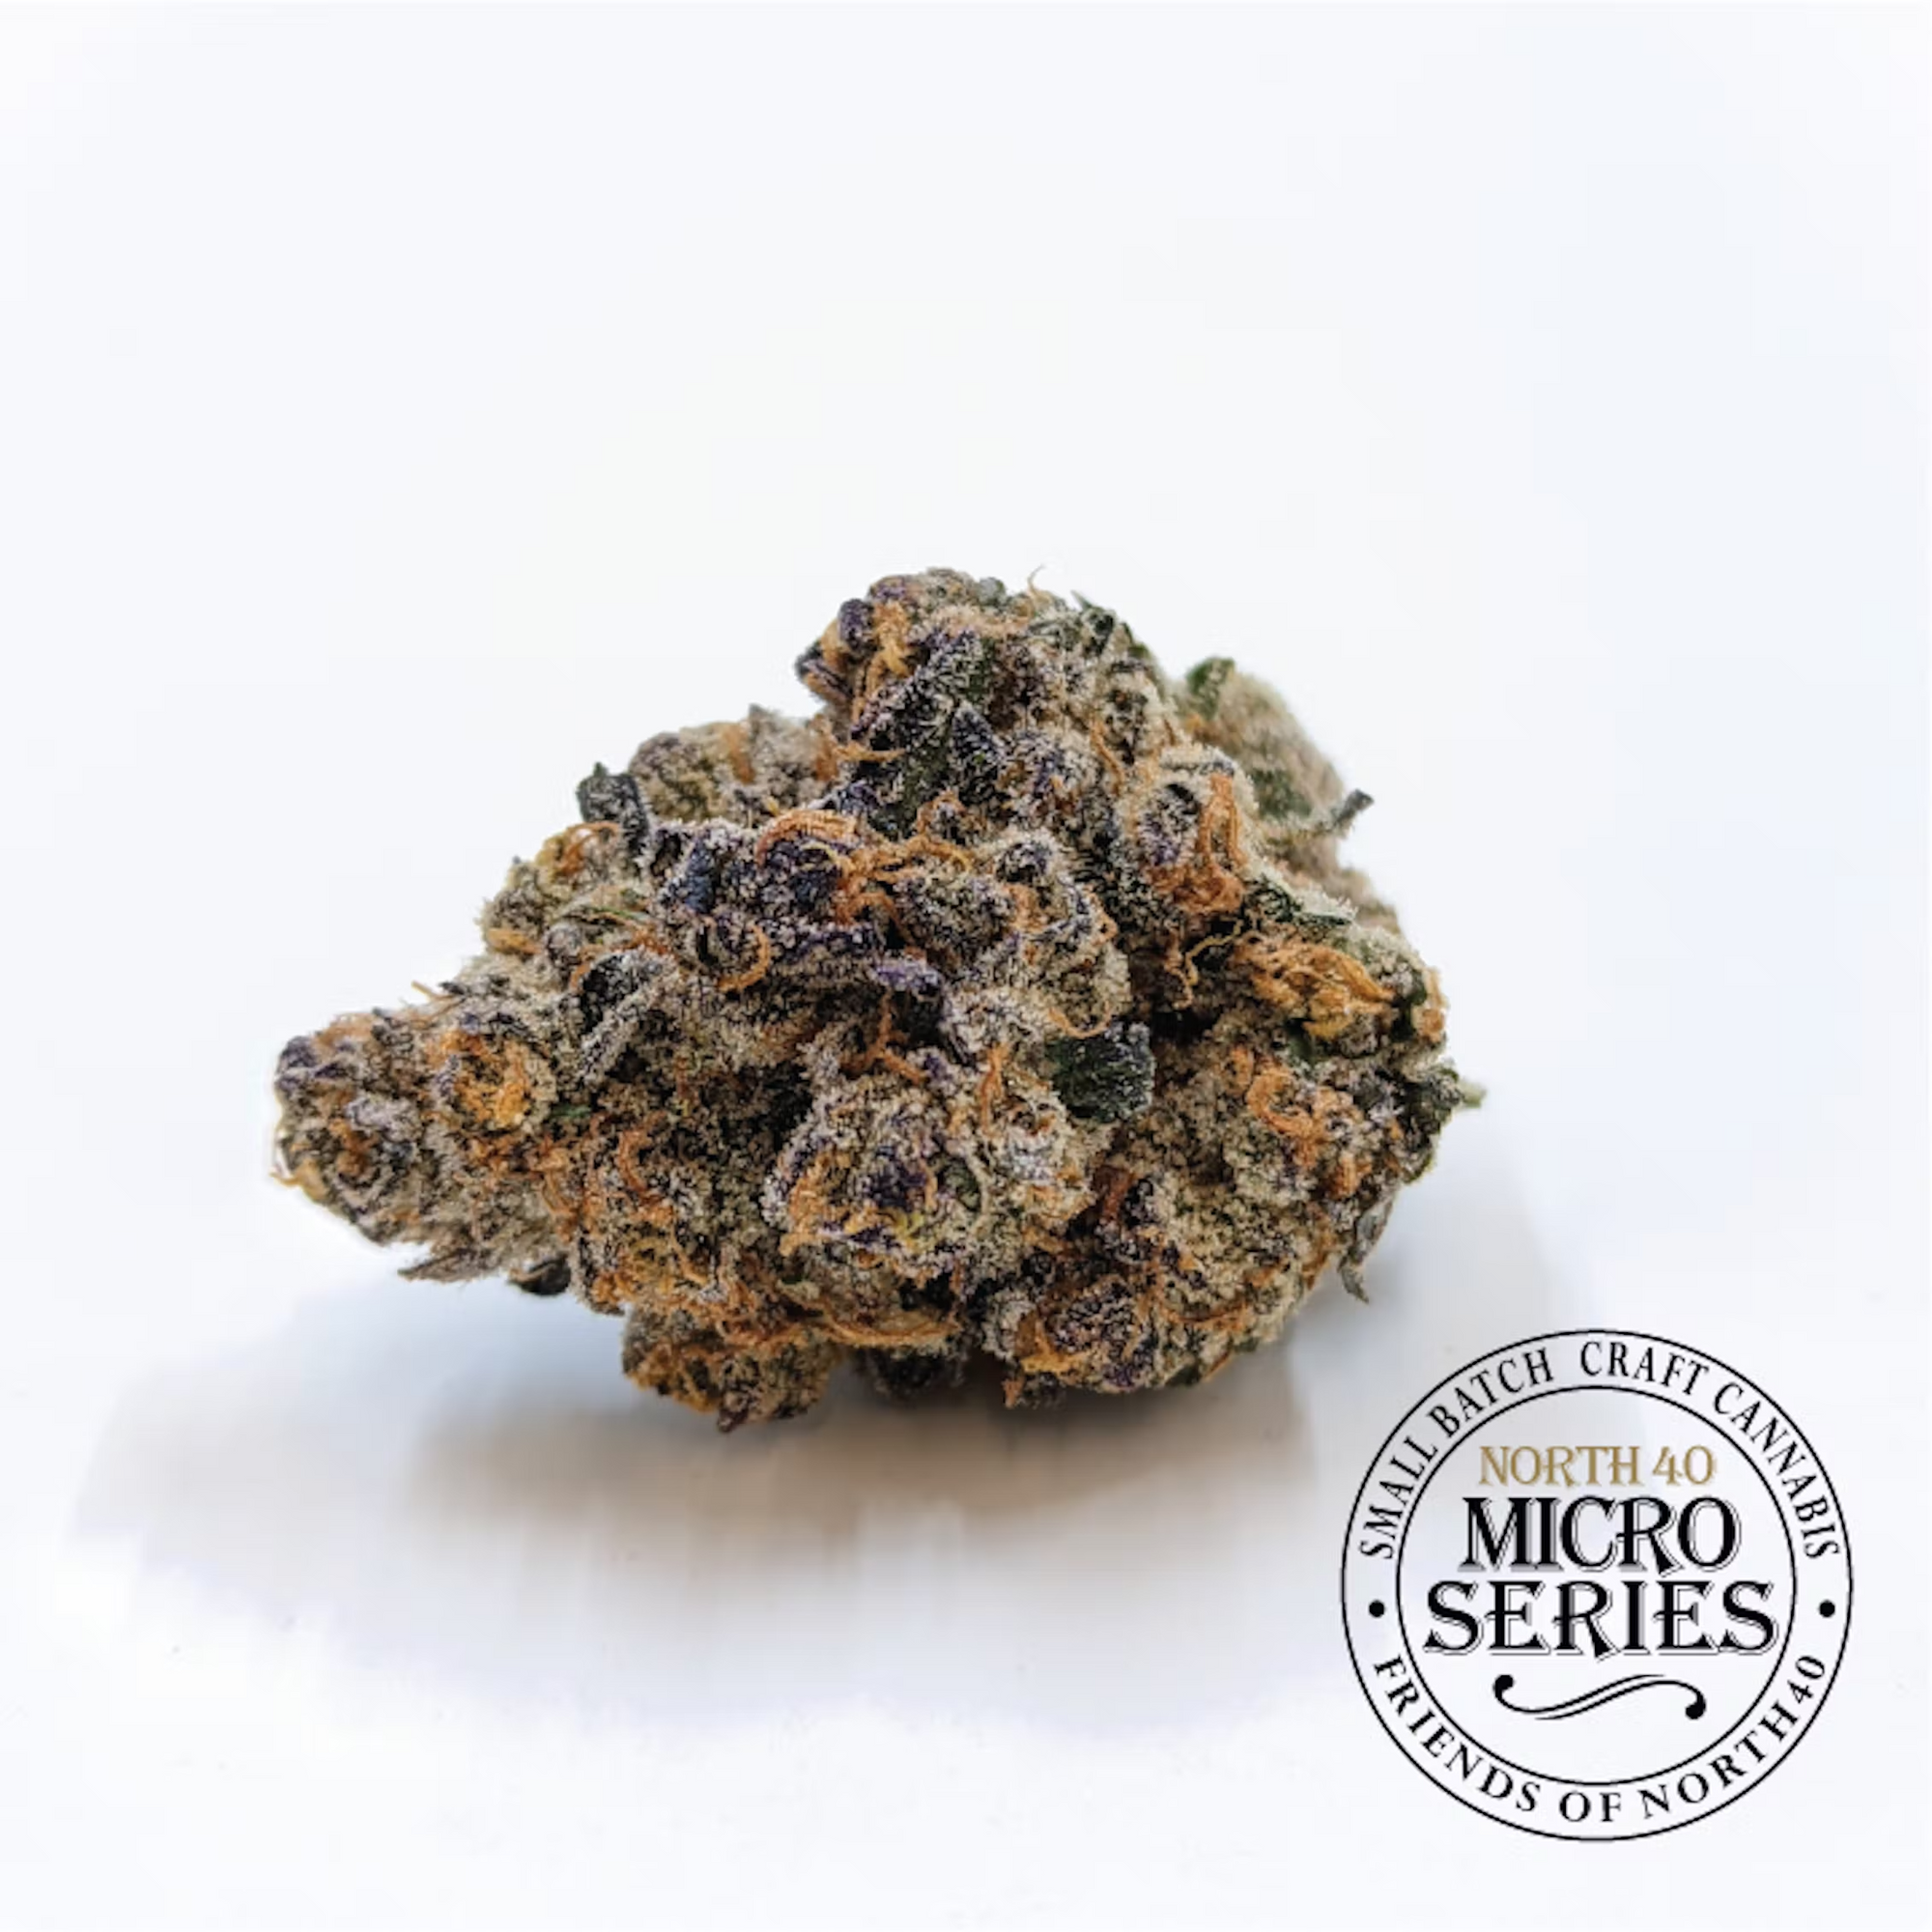 North 40 Cannabis Micro Series Grape Gasoline